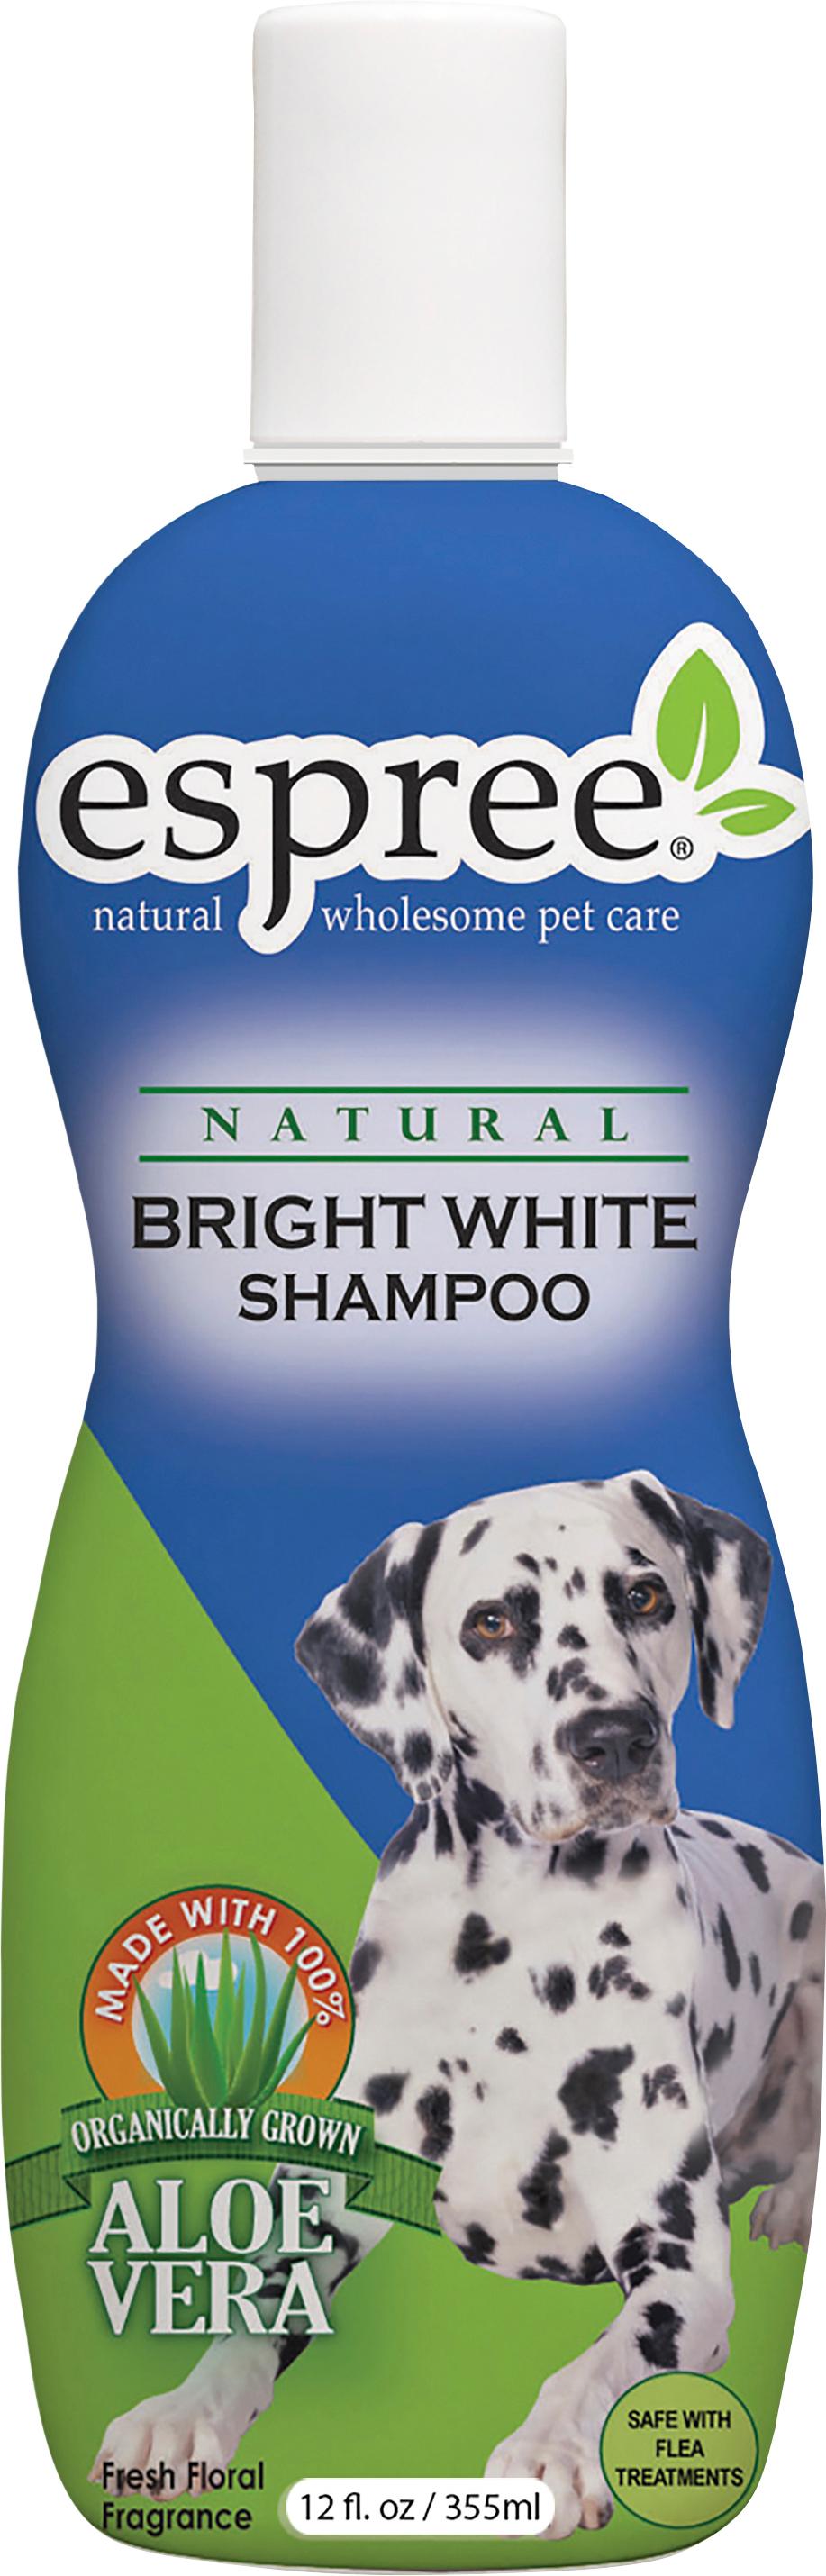 Husdjur - Hund - Hundskötsel - Hundschampo & Balsam